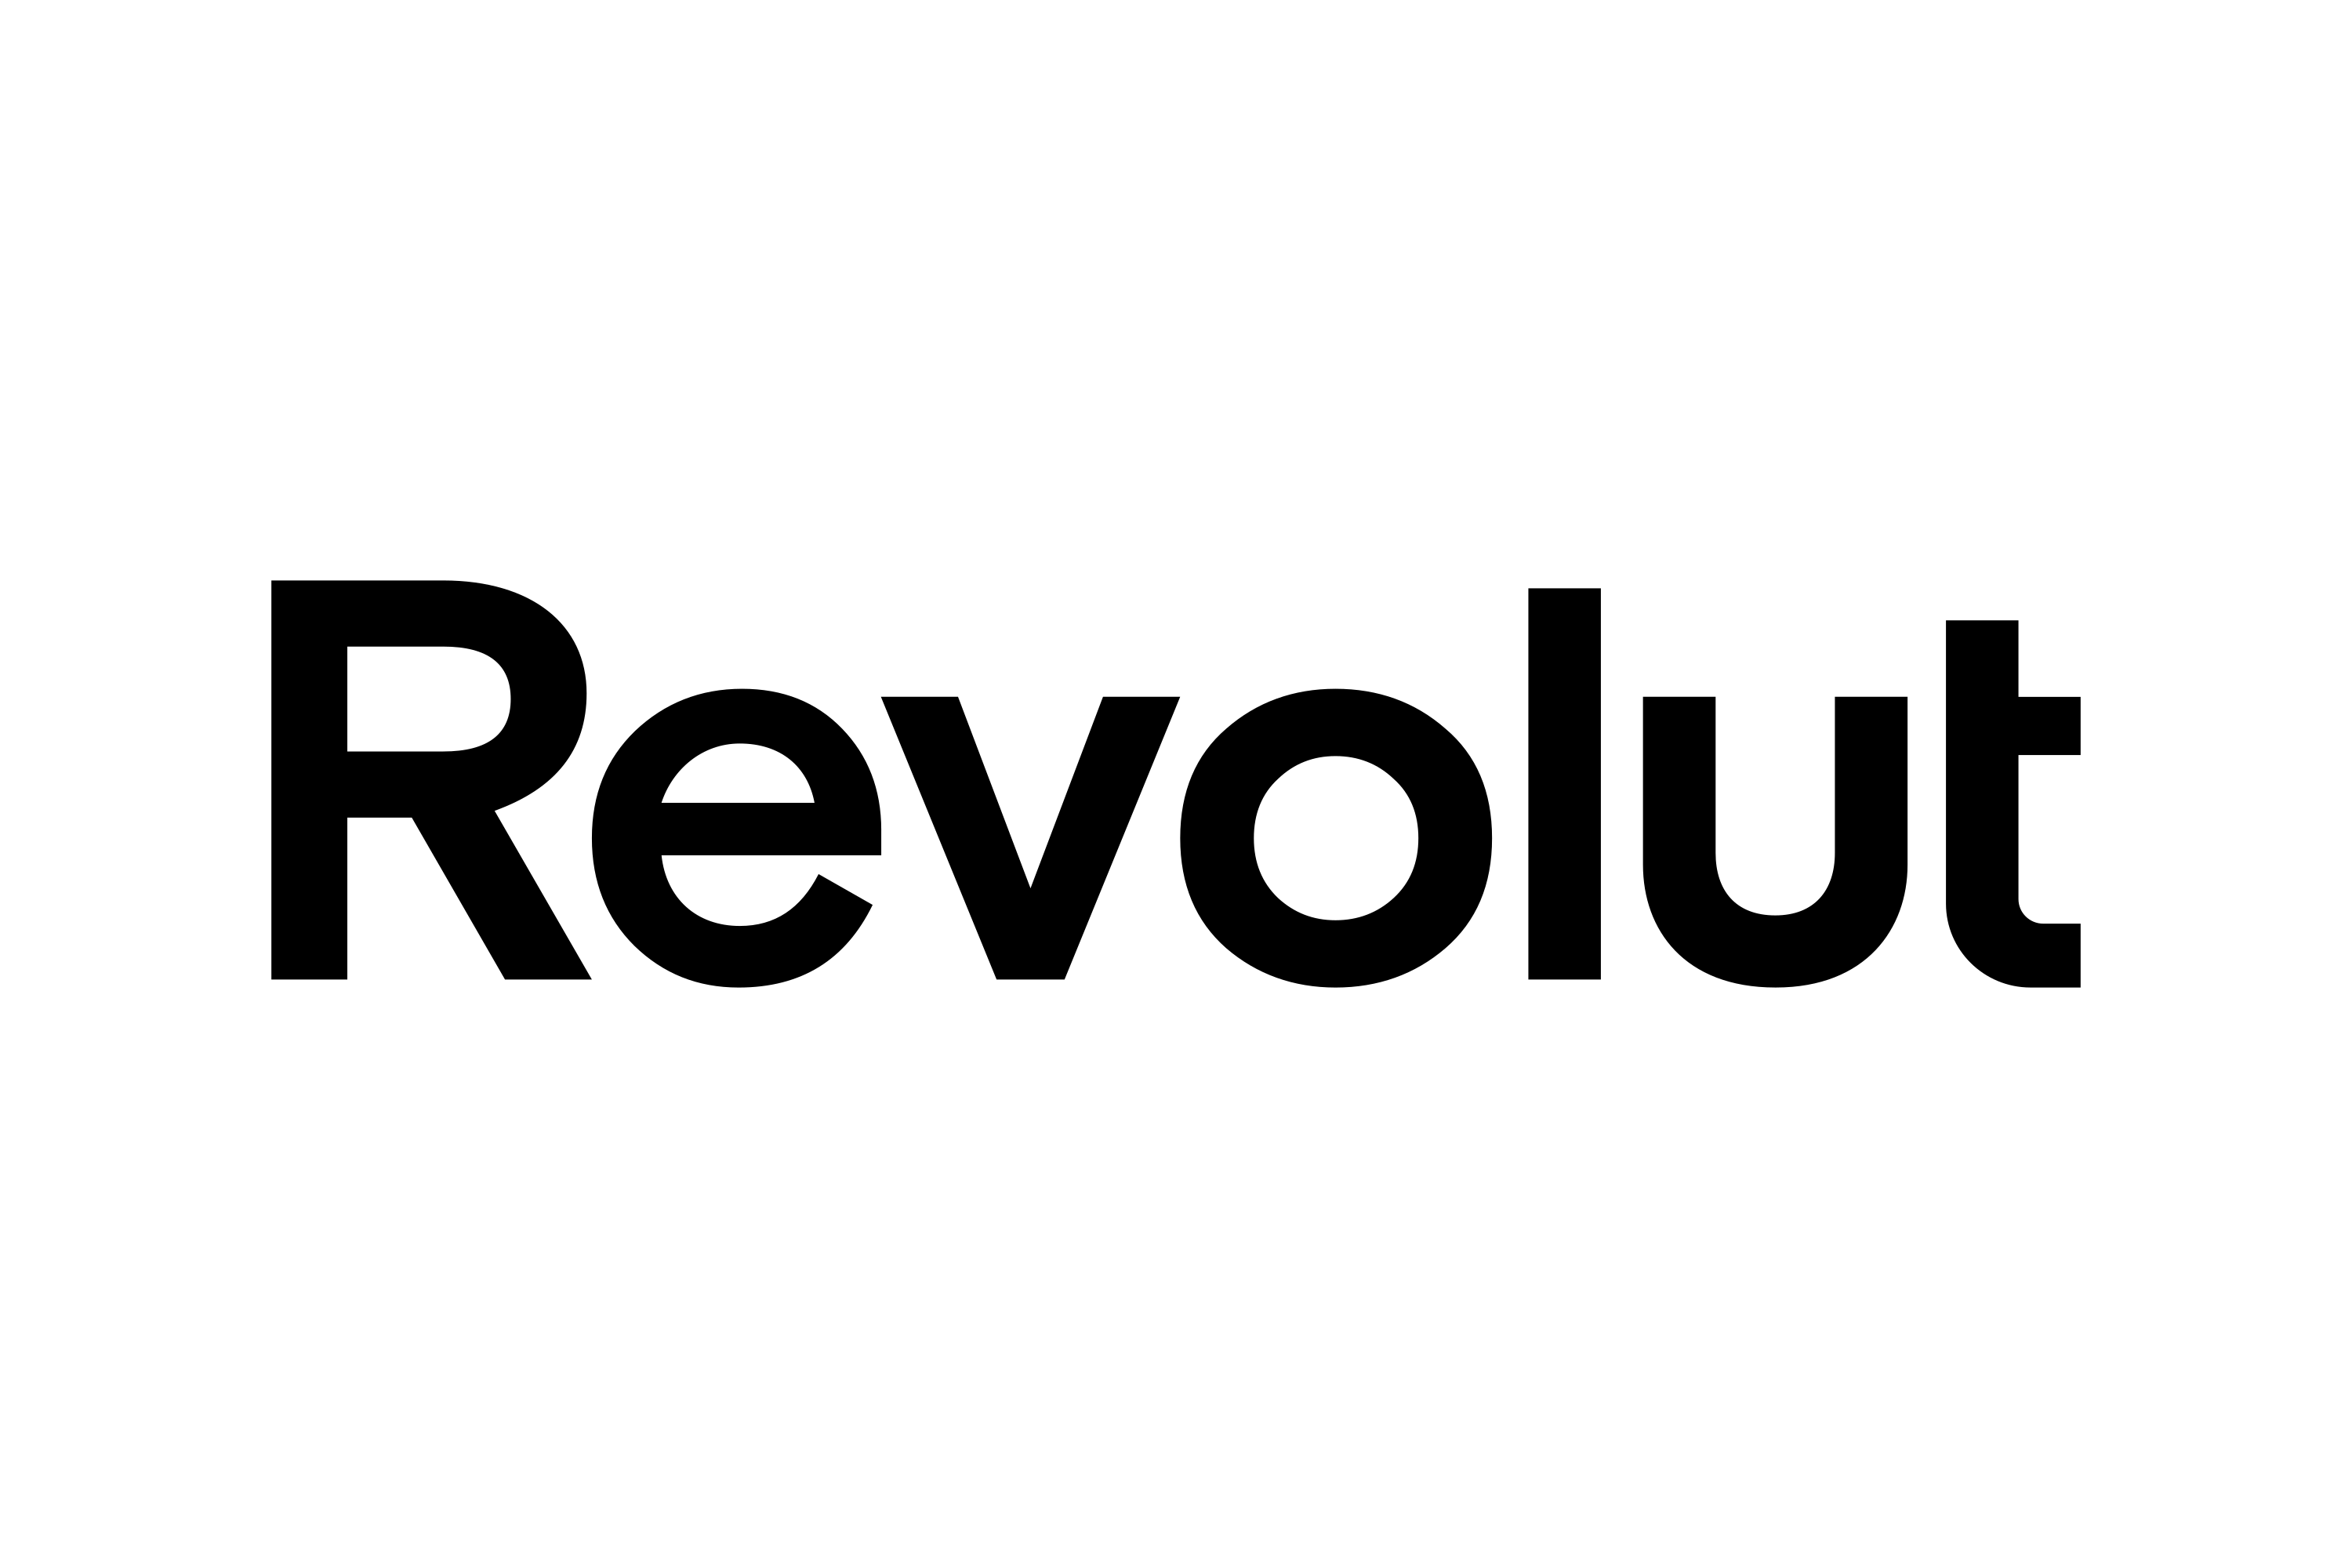 Revolut-Logo